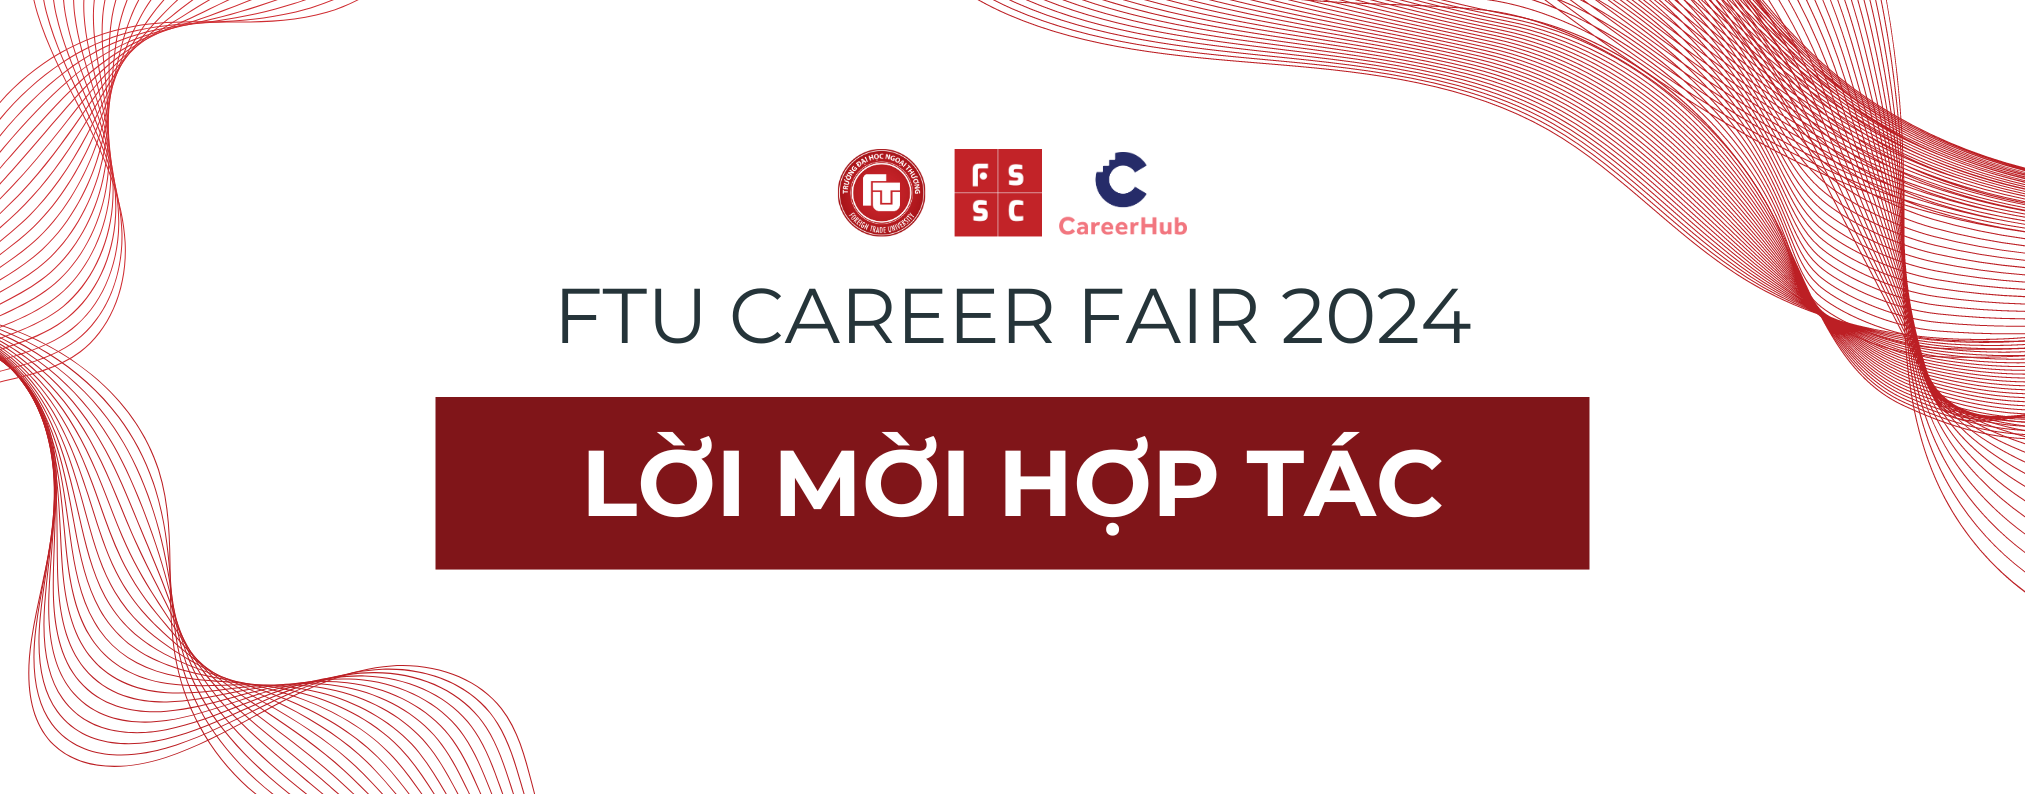 FTU Career Fair 2024